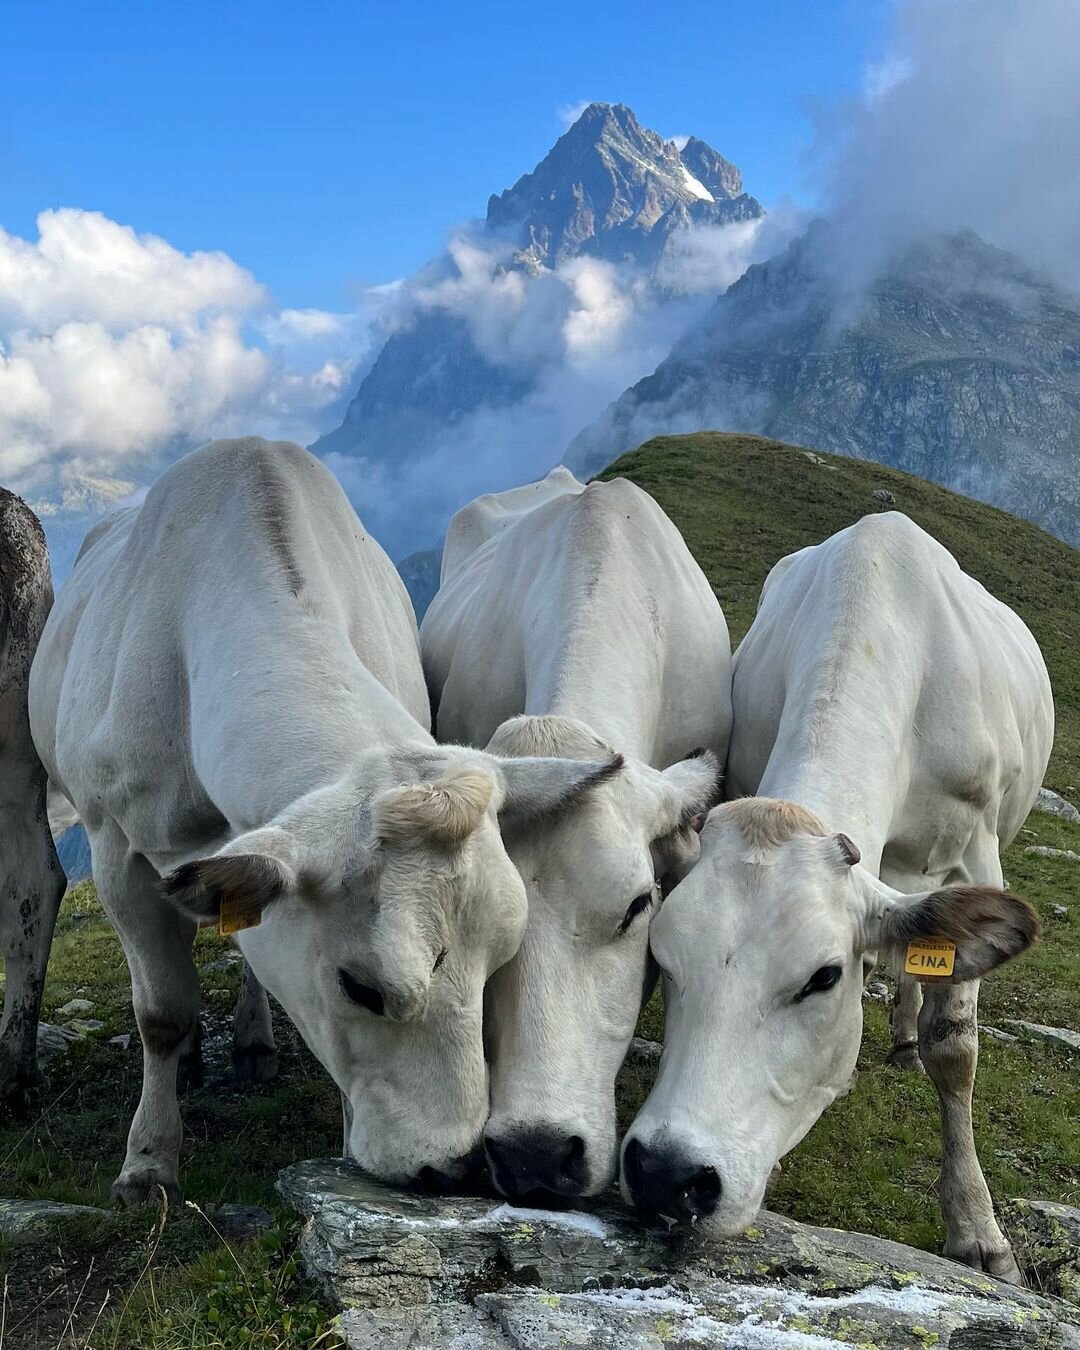 tre vacche bianche stanno leccando una roccia dove è stato posto del sale; sullo sfondo il Monviso